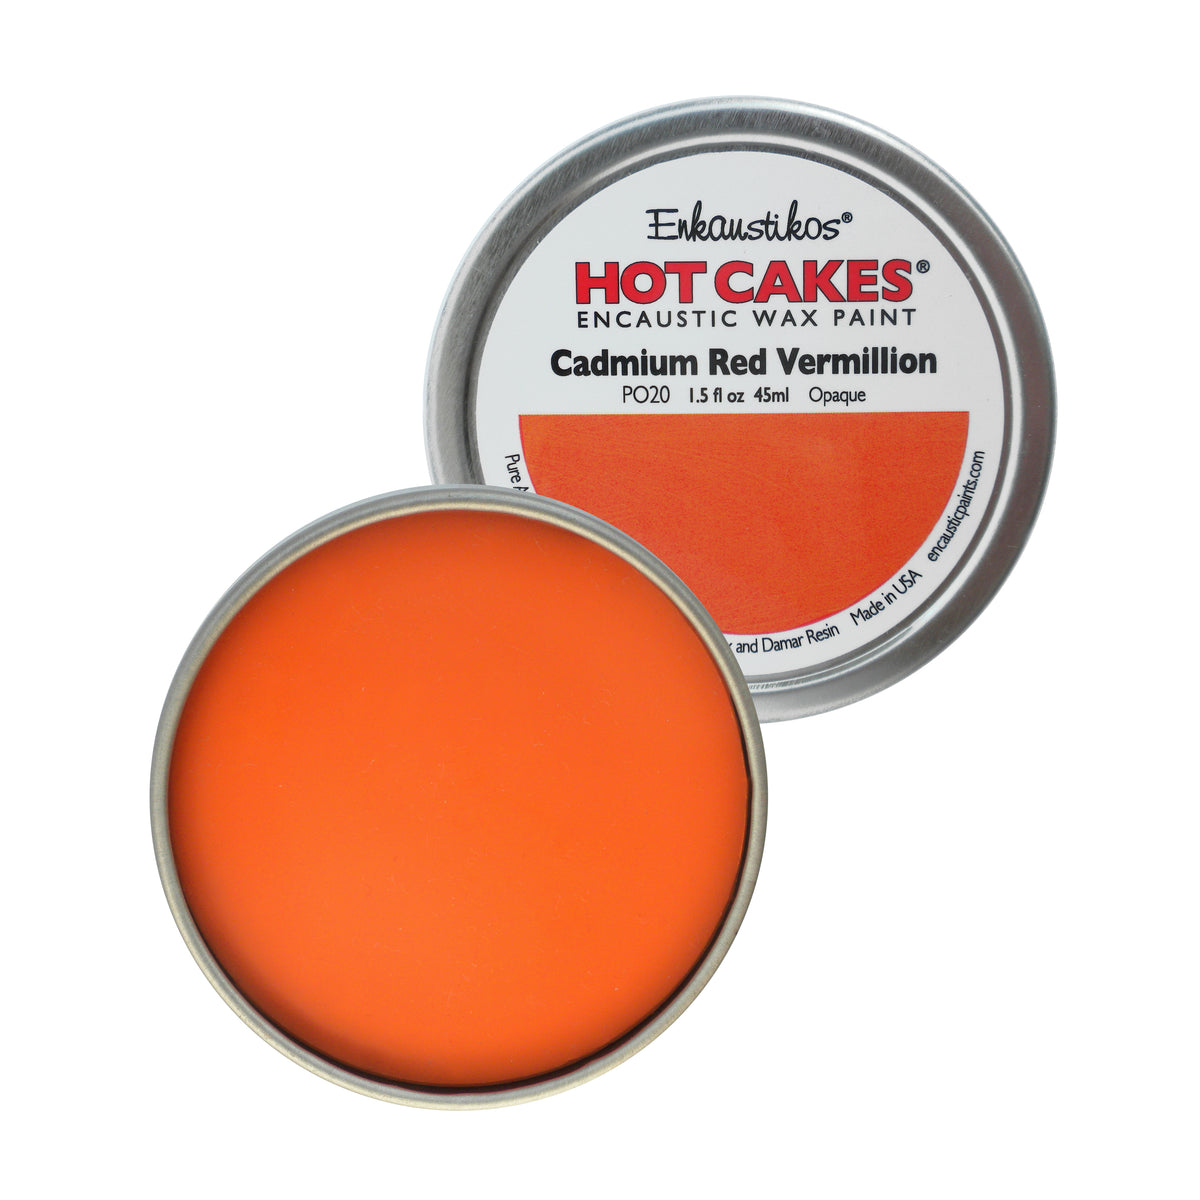 Cadmium Red Vermillion Hot Cakes